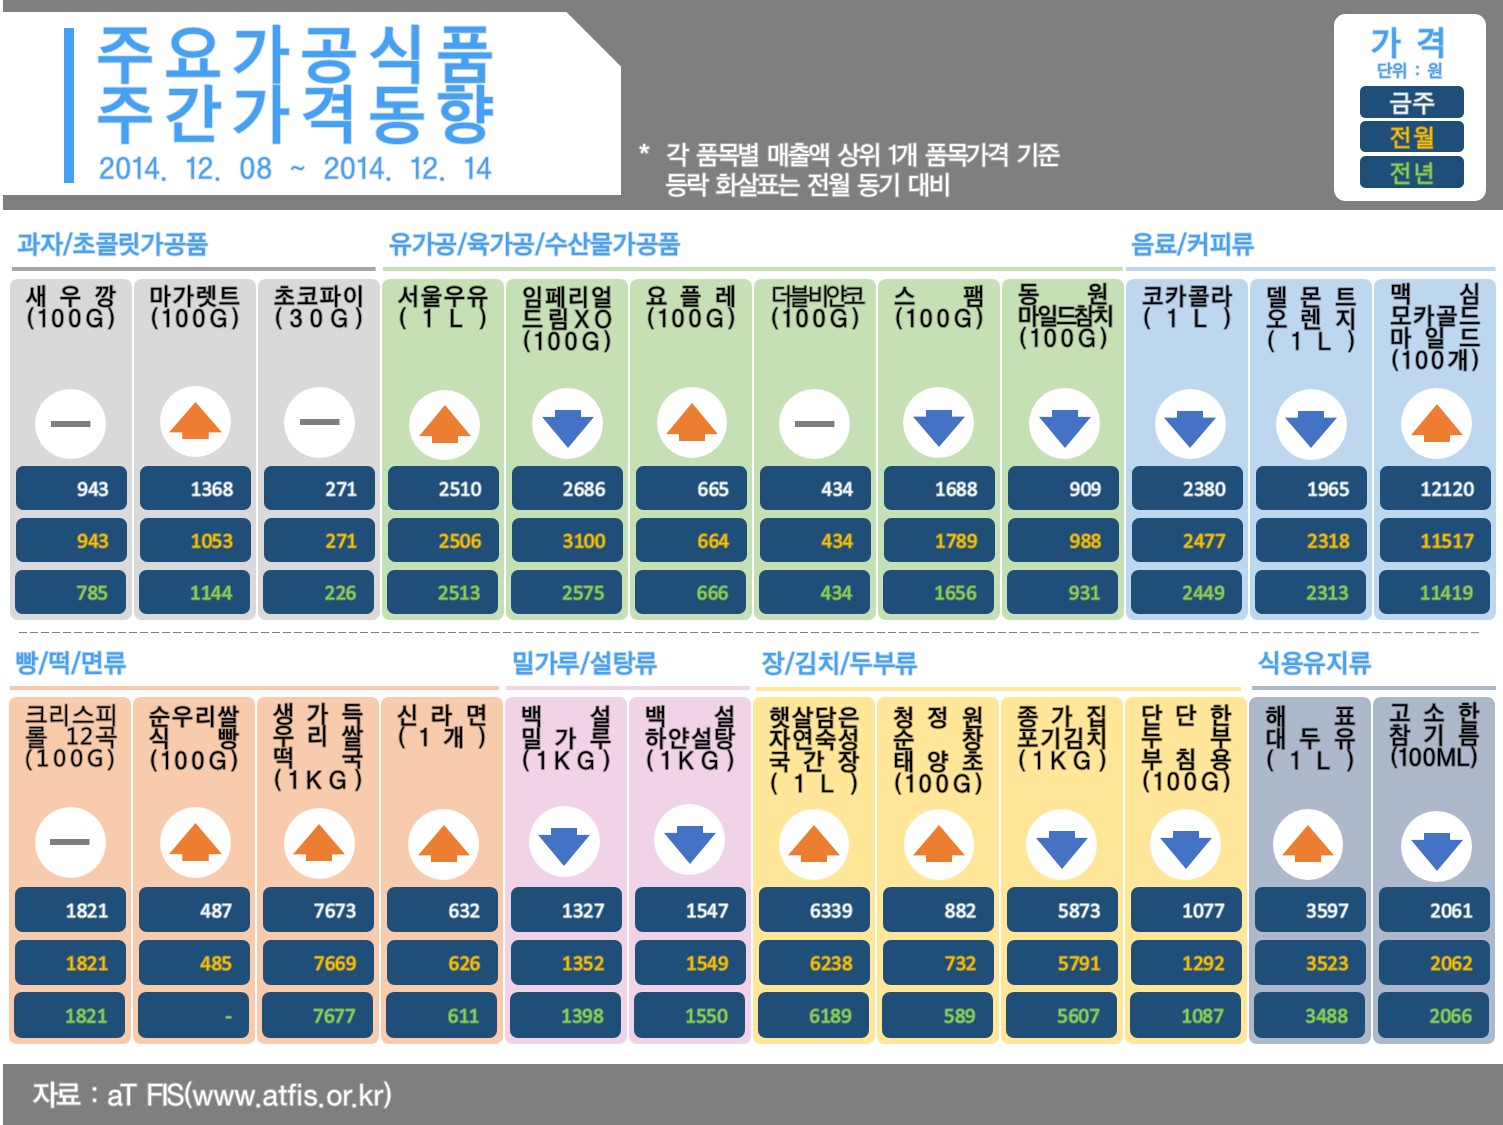 주요 가공식품 주간가격 동향 (2014년 12월 넷째주)